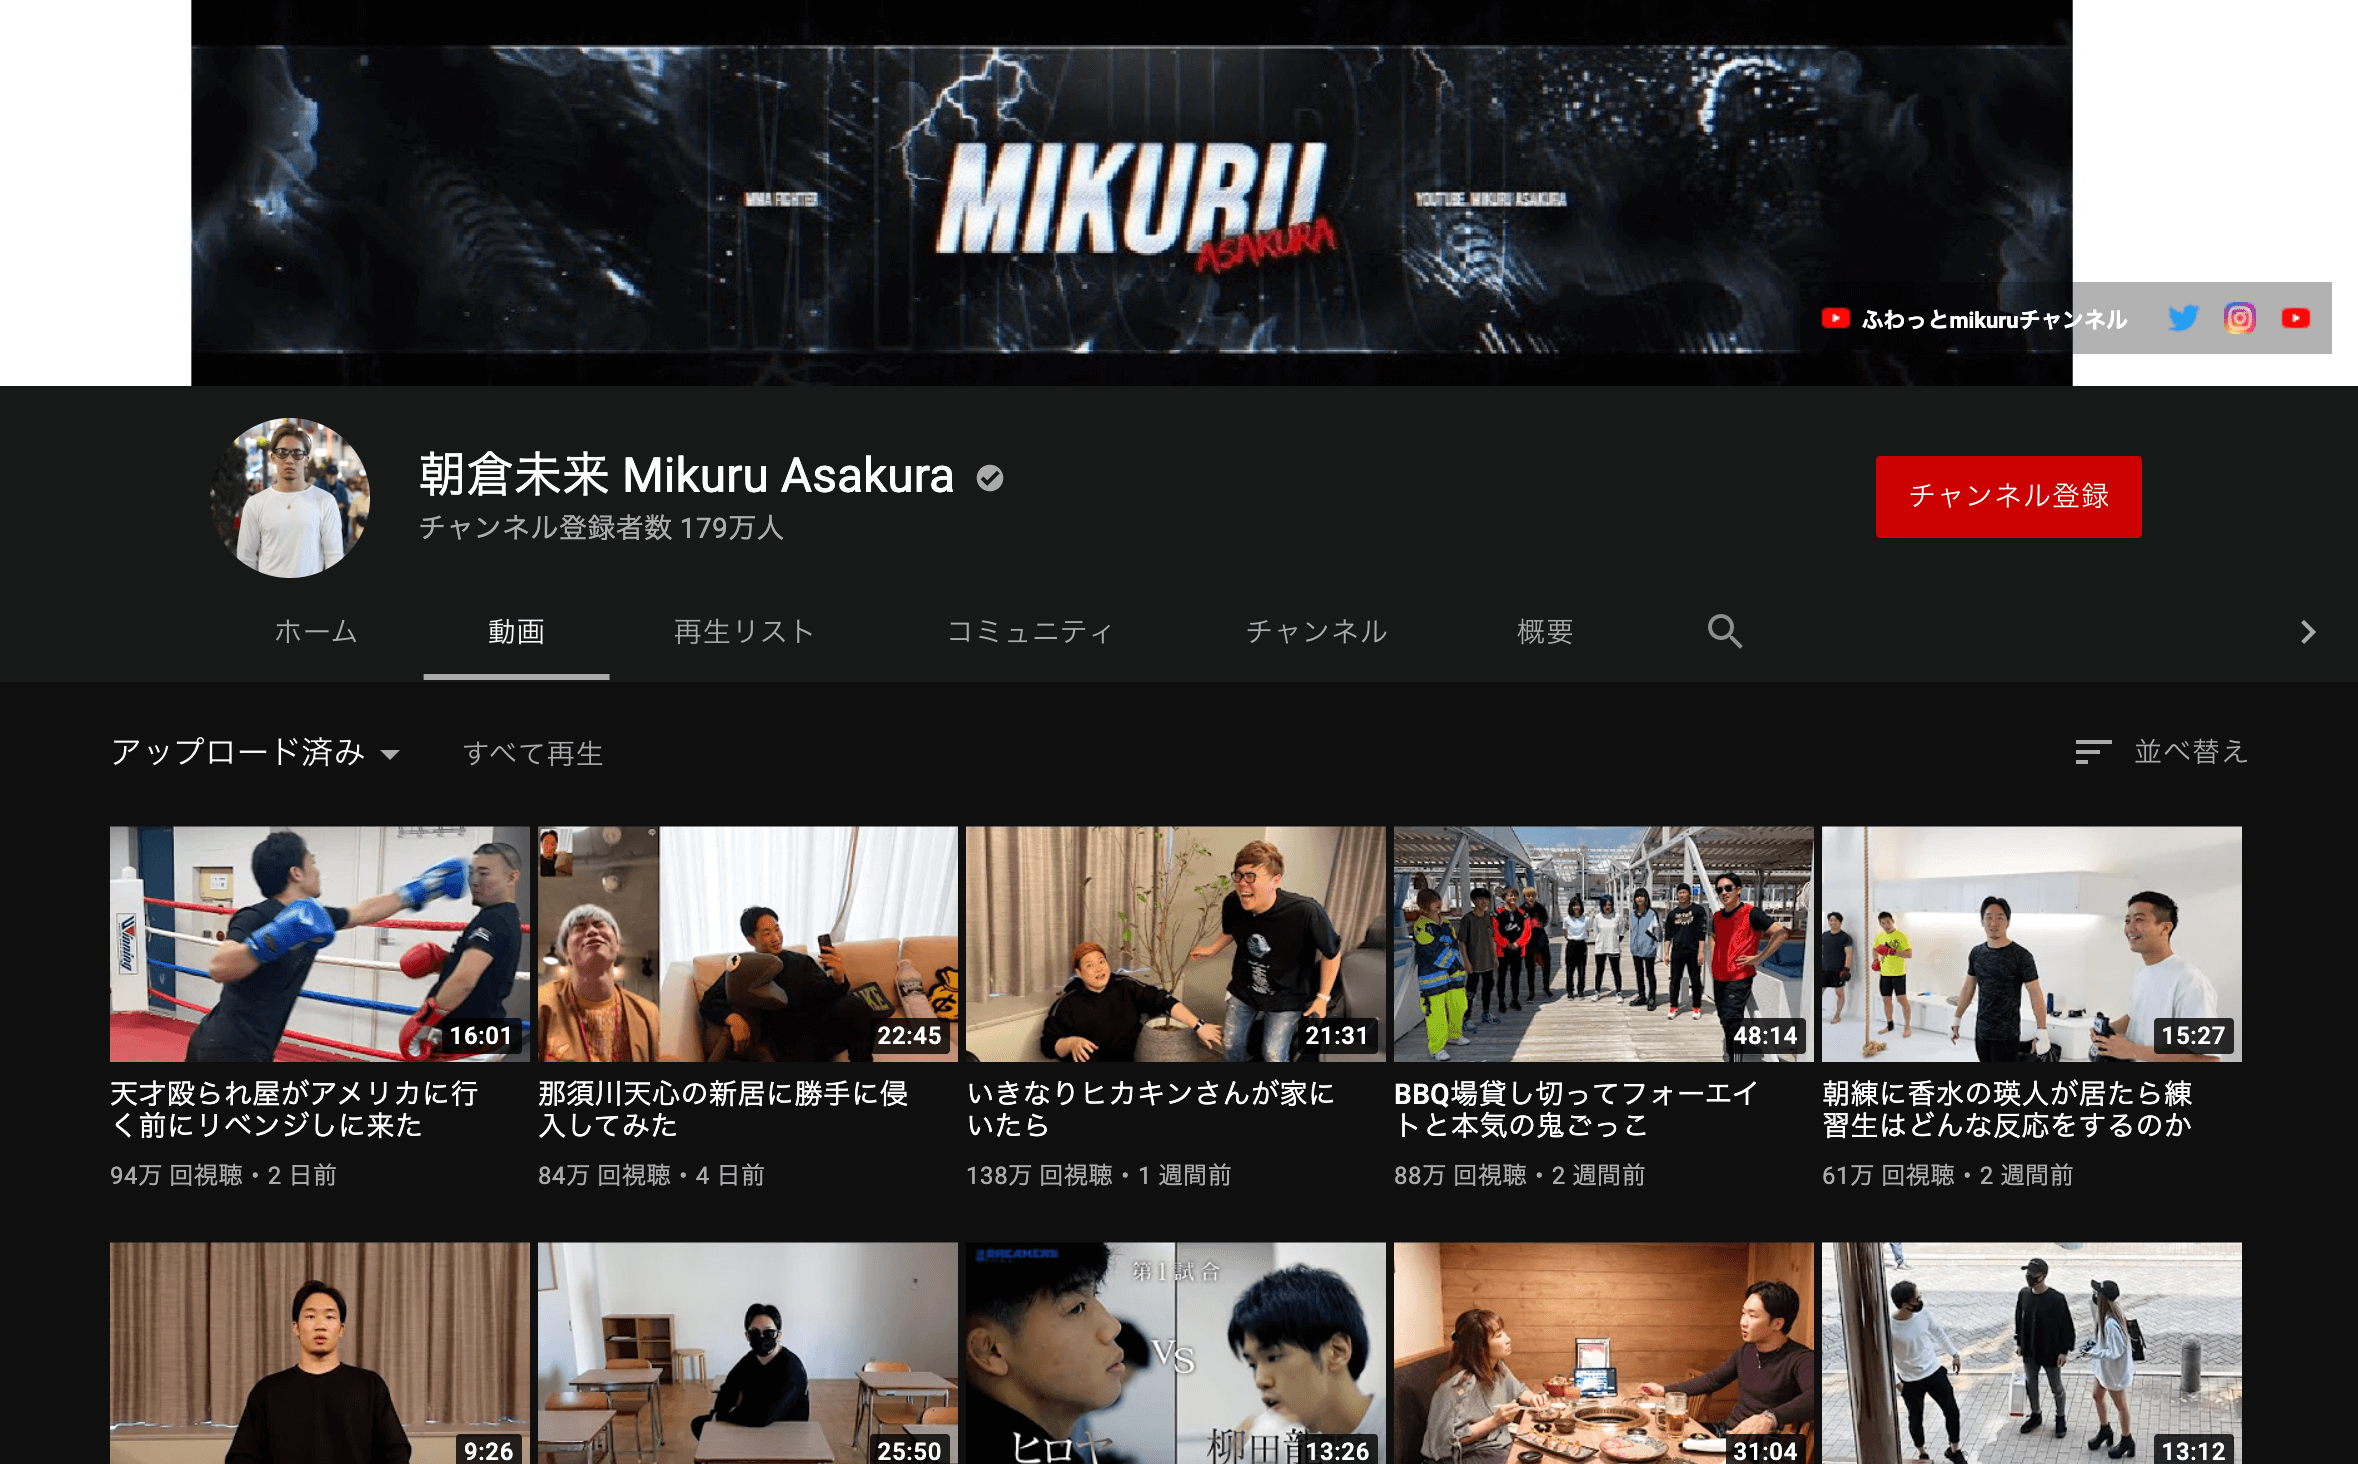 youtube_fighting_mikuru asakura